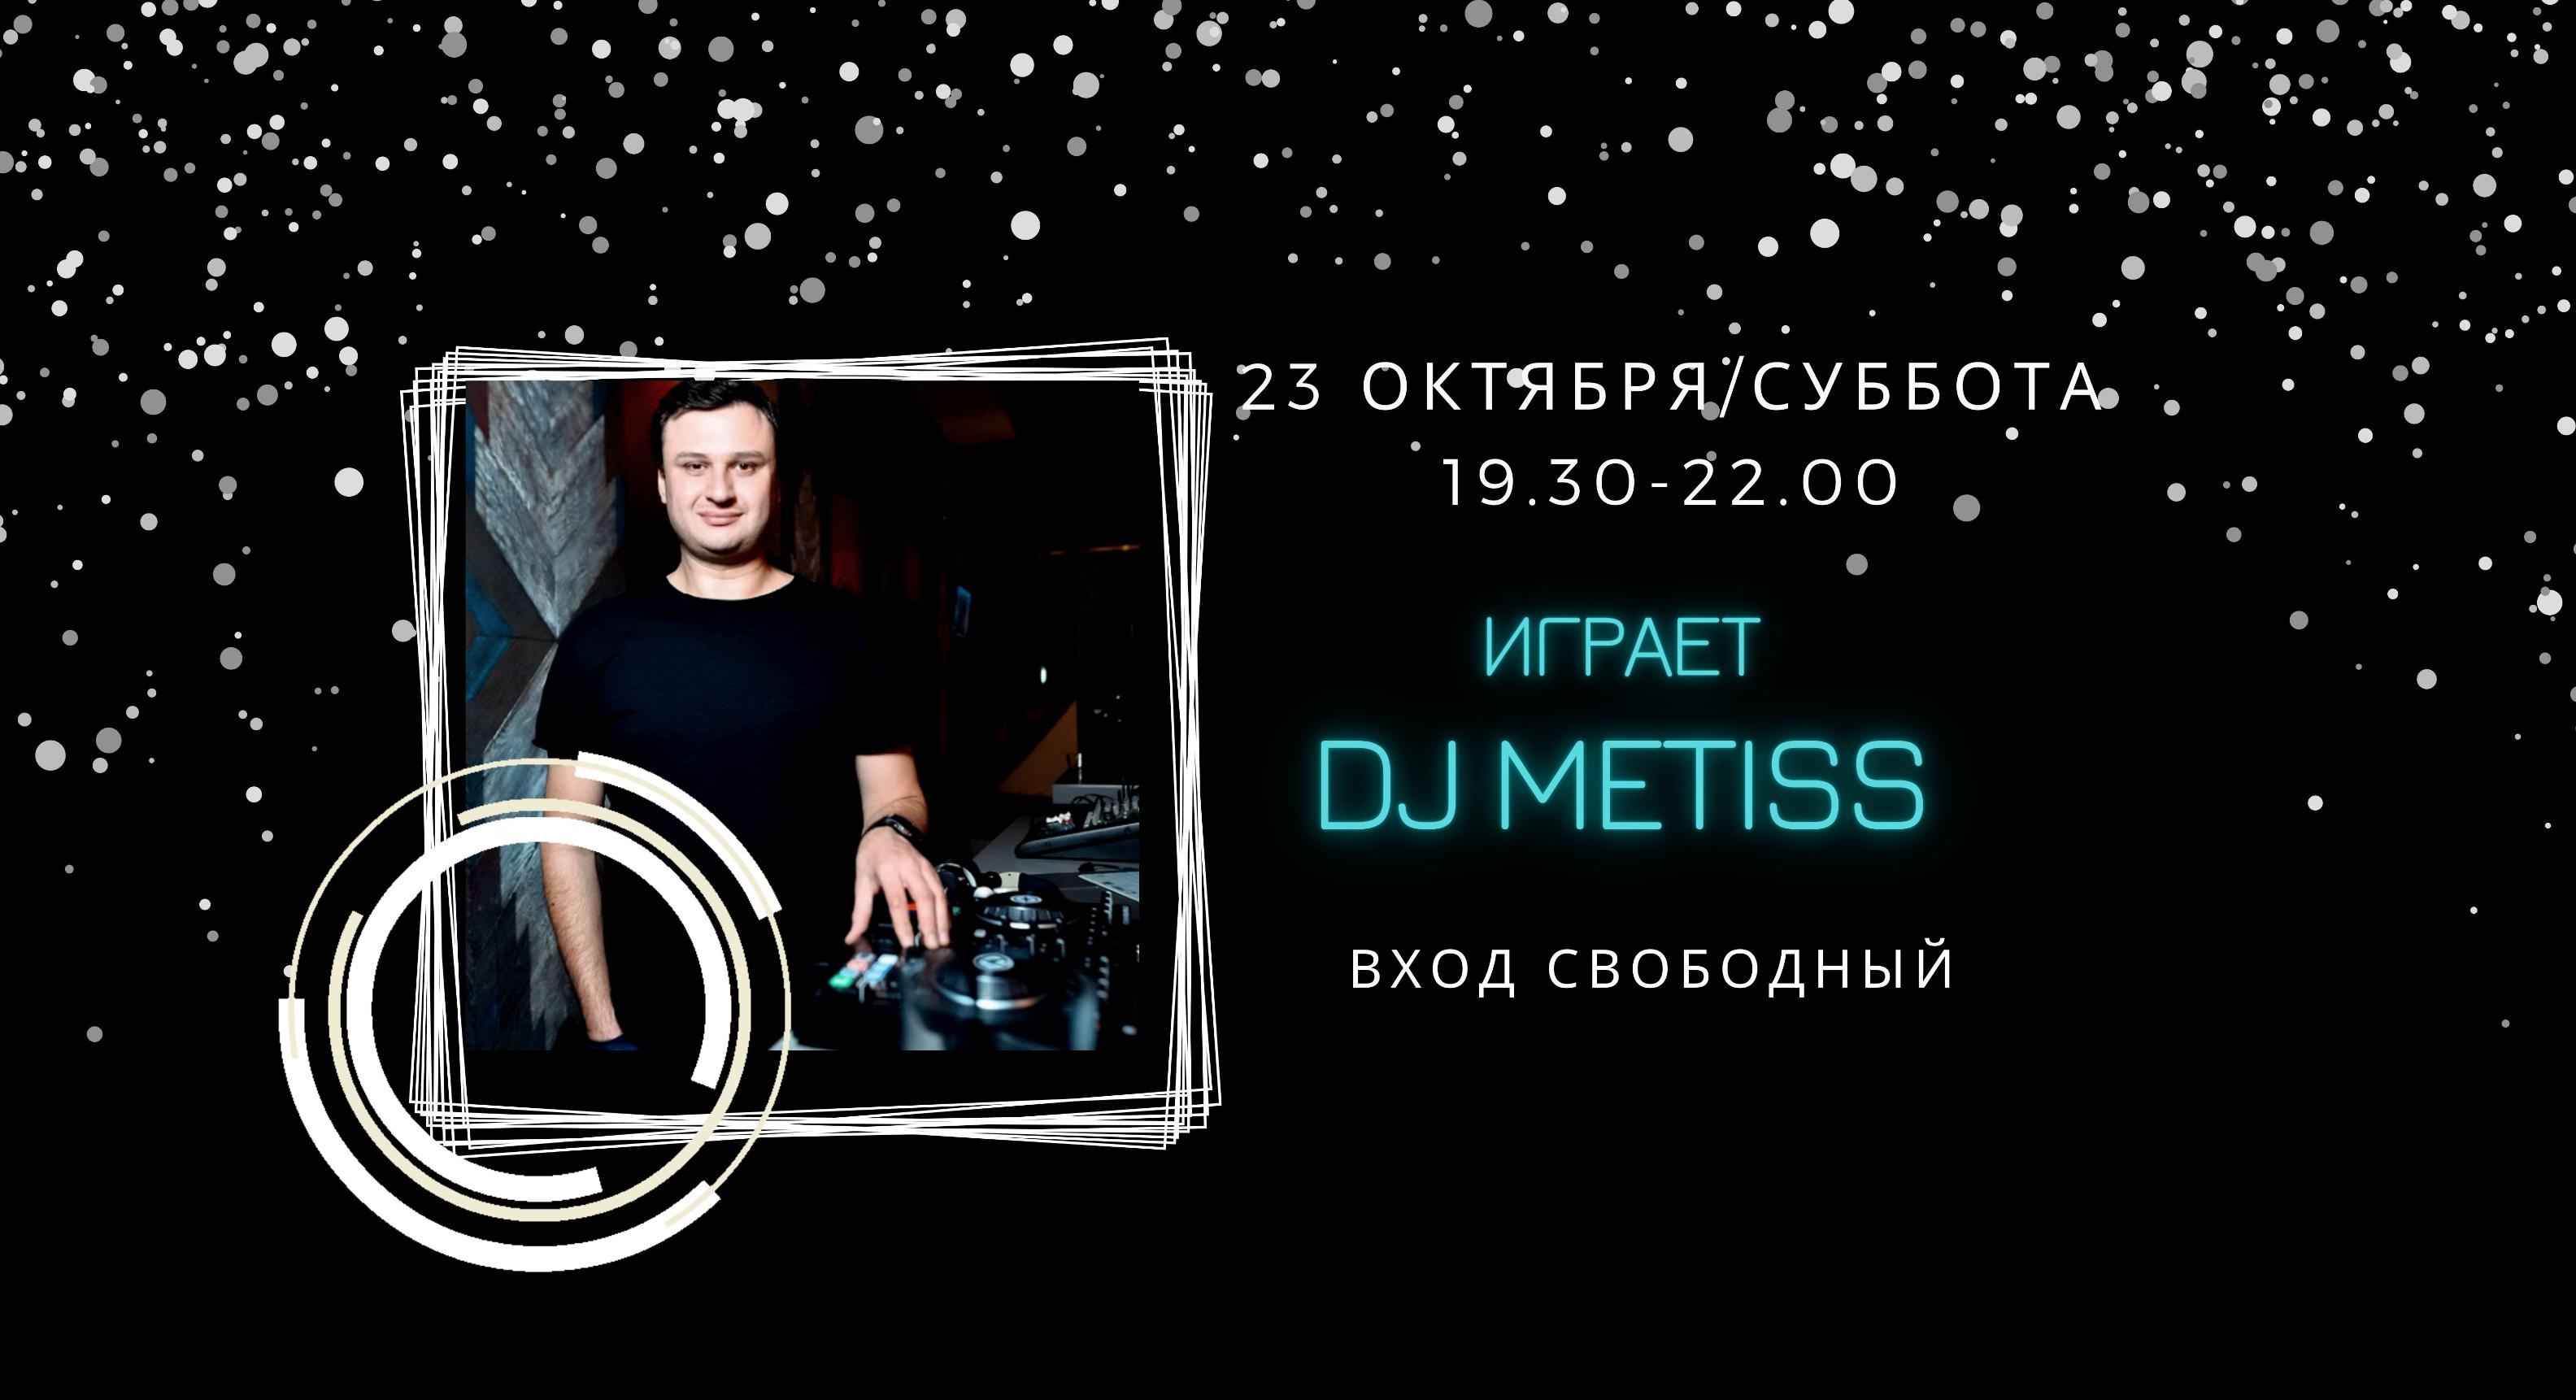 23.10 - на сцене DJ Metiss